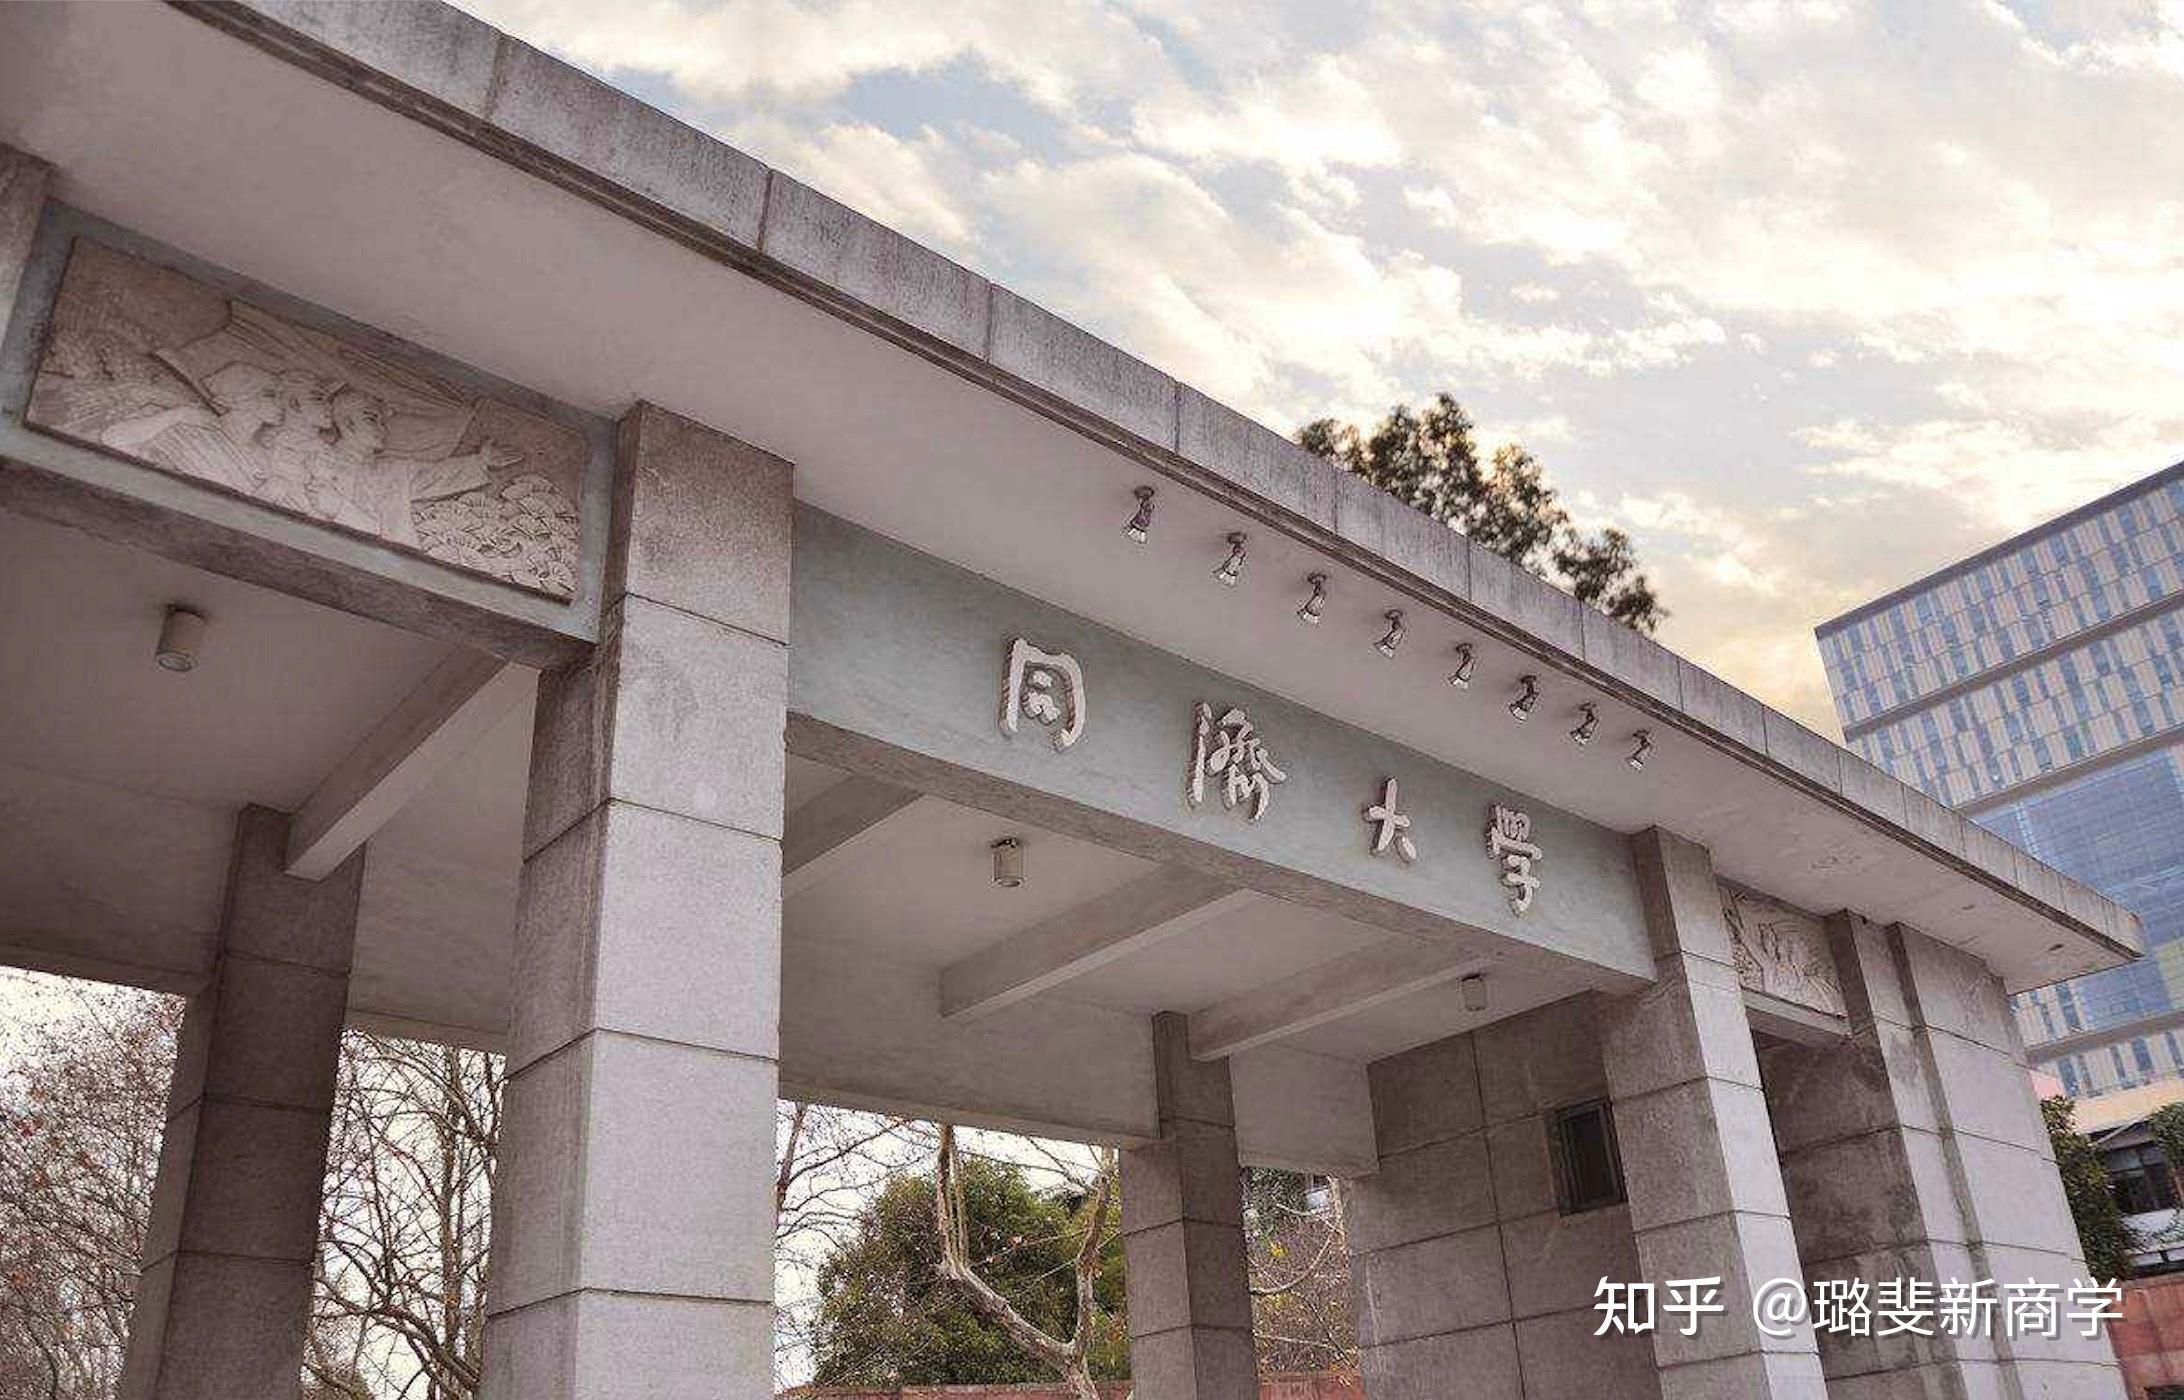 同济大学历史悠久,声誉卓著,是中国最早的国立大学之一 ,是教育部直属